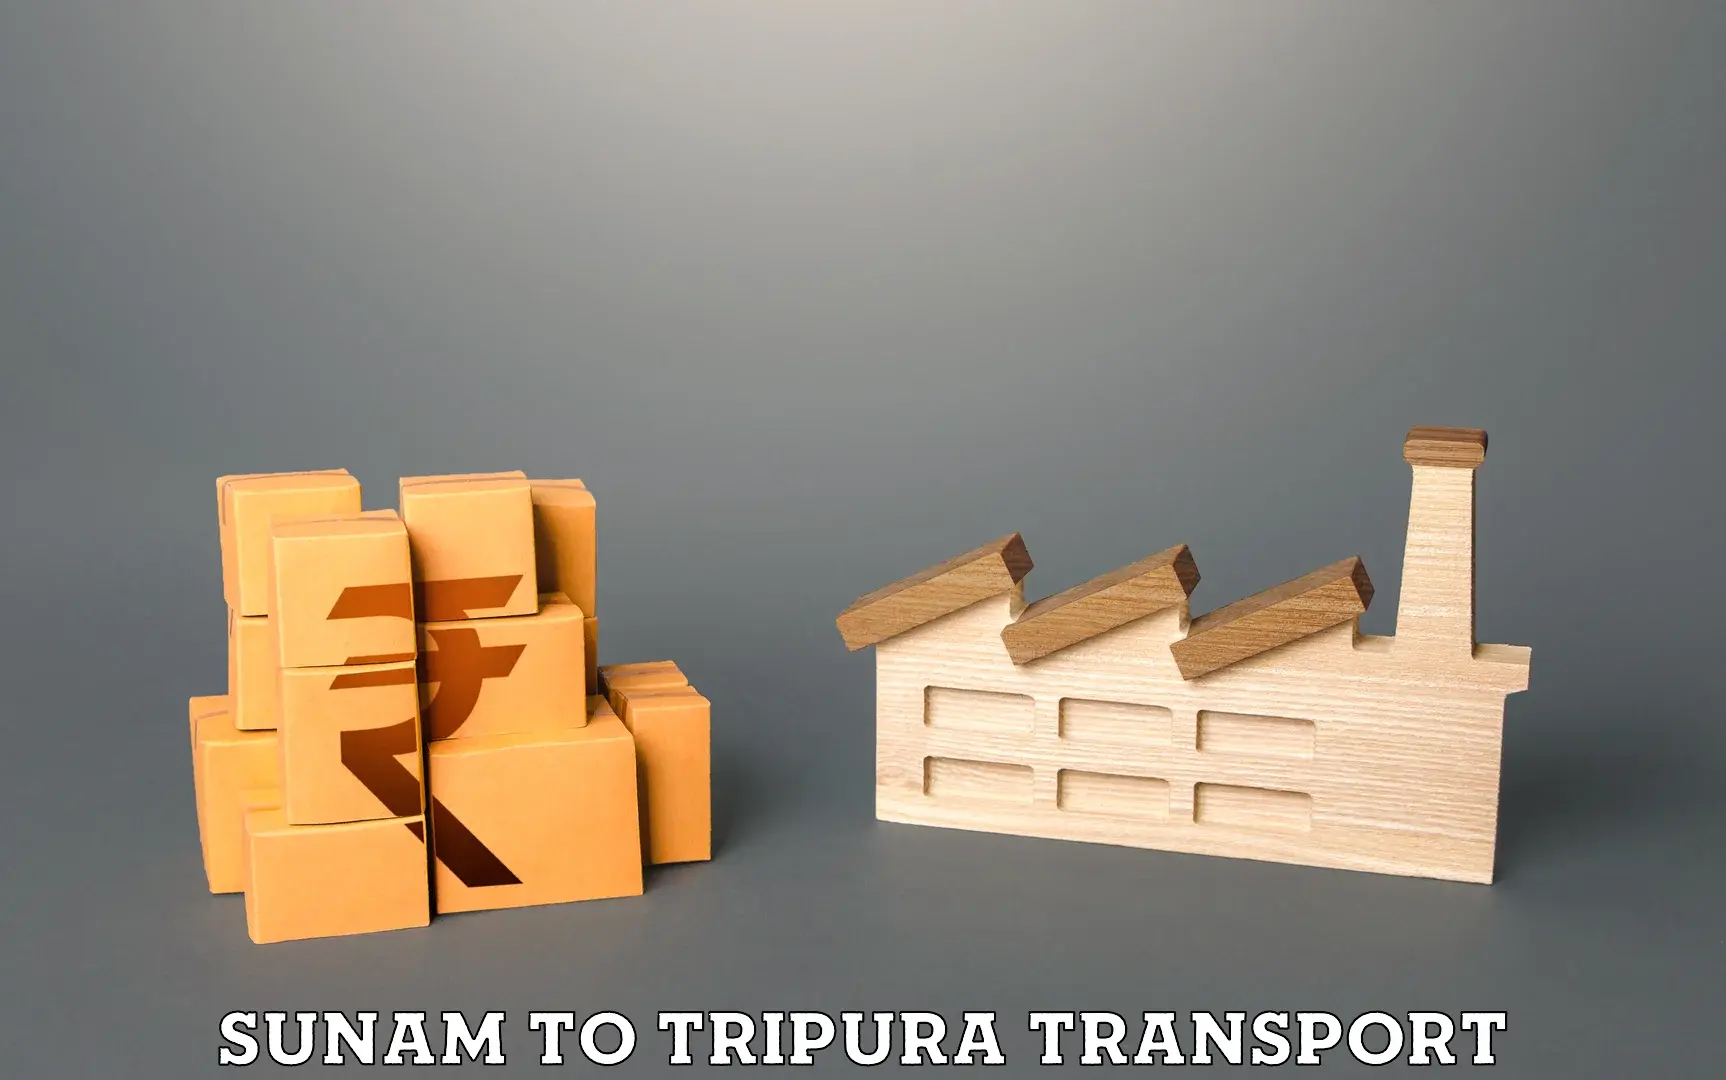 All India transport service Sunam to IIIT Agartala